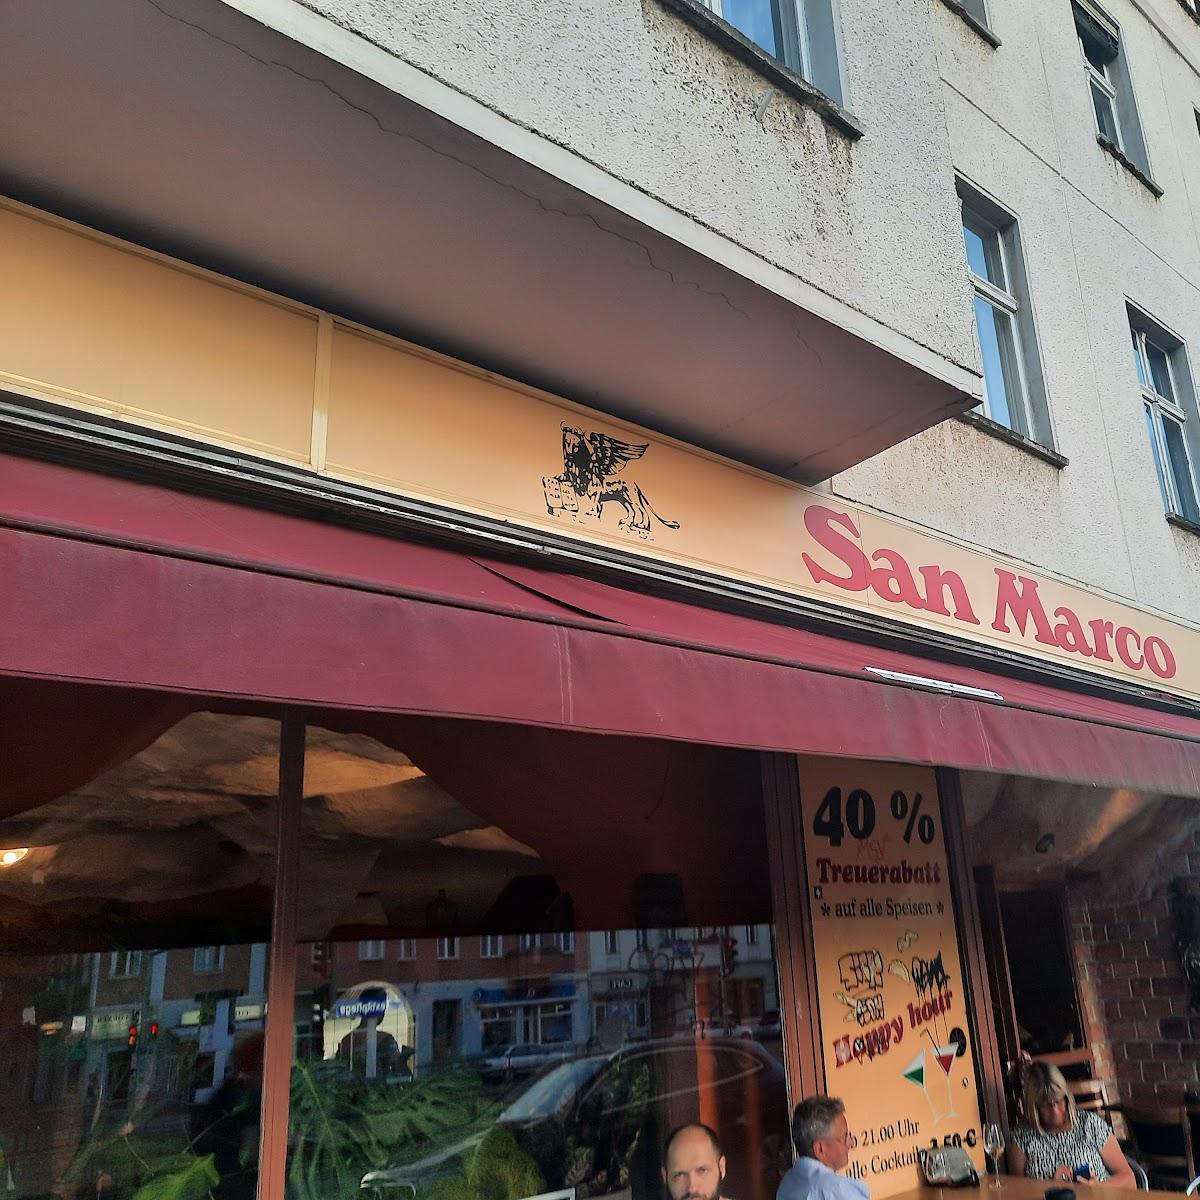 Restaurant "San Marco" in Berlin